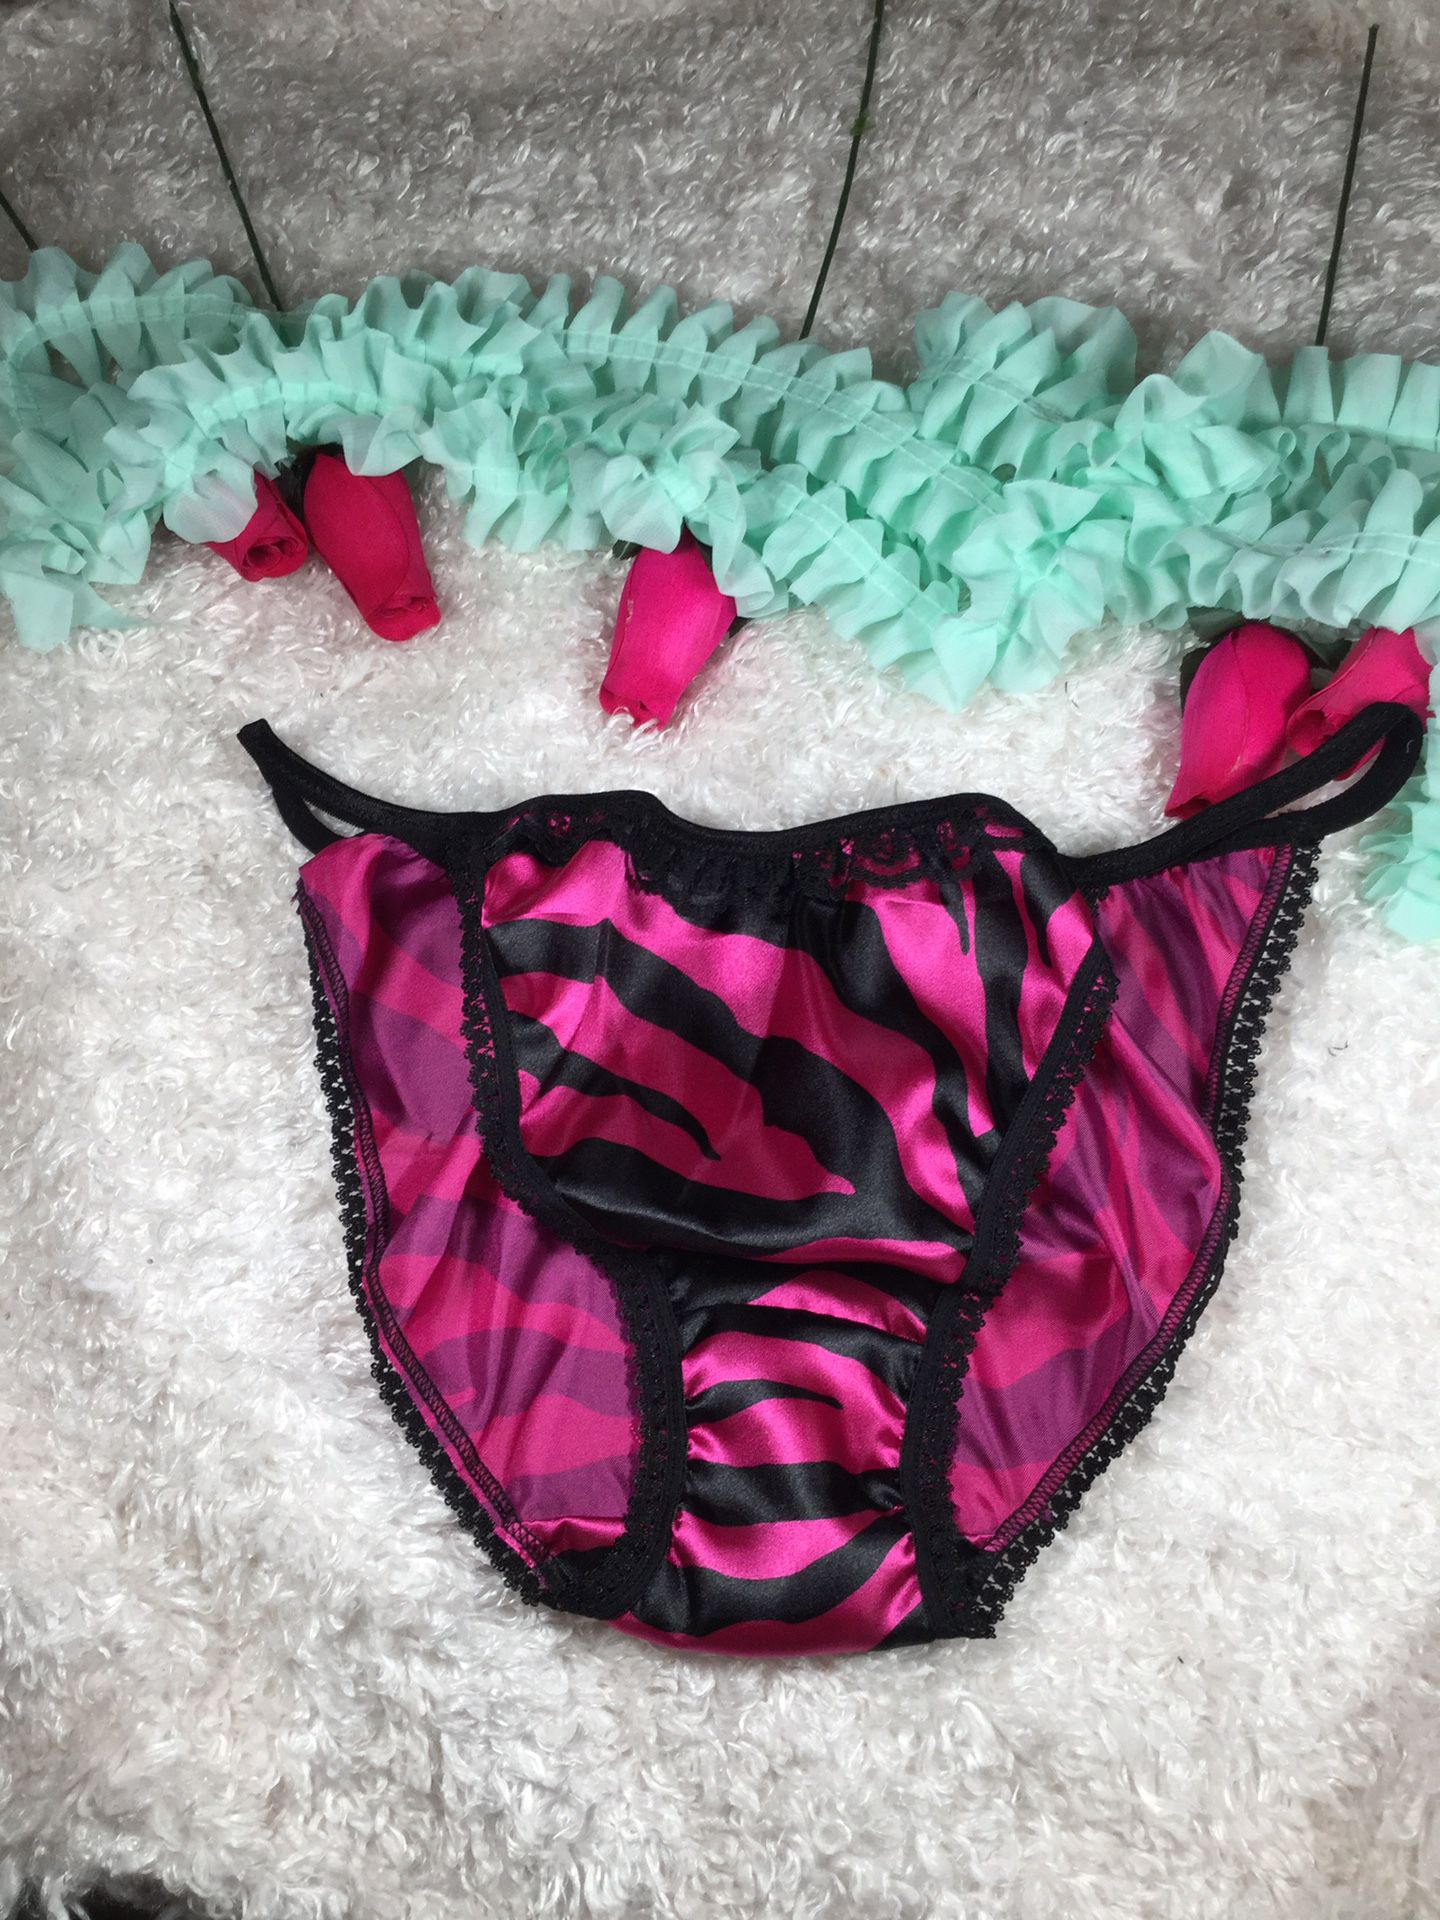 Hot pink zebra print satin silky panties XL